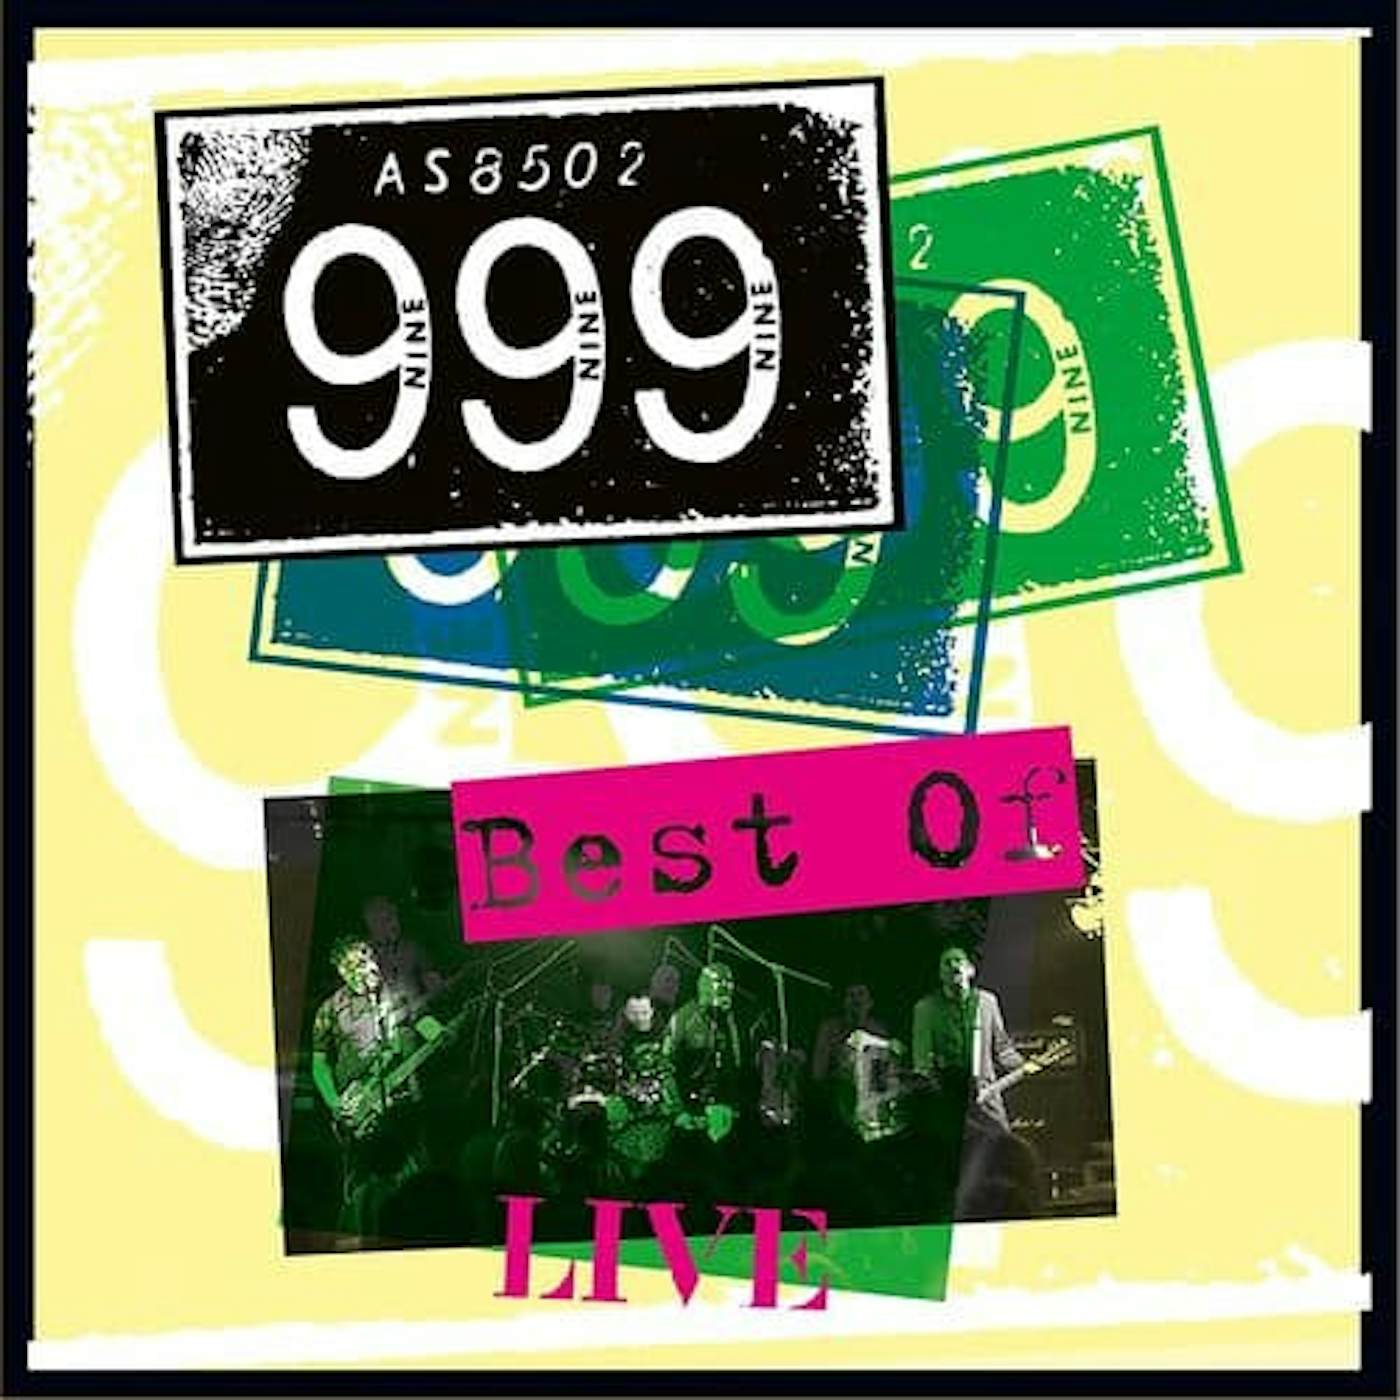 999 Best of Live Vinyl Record